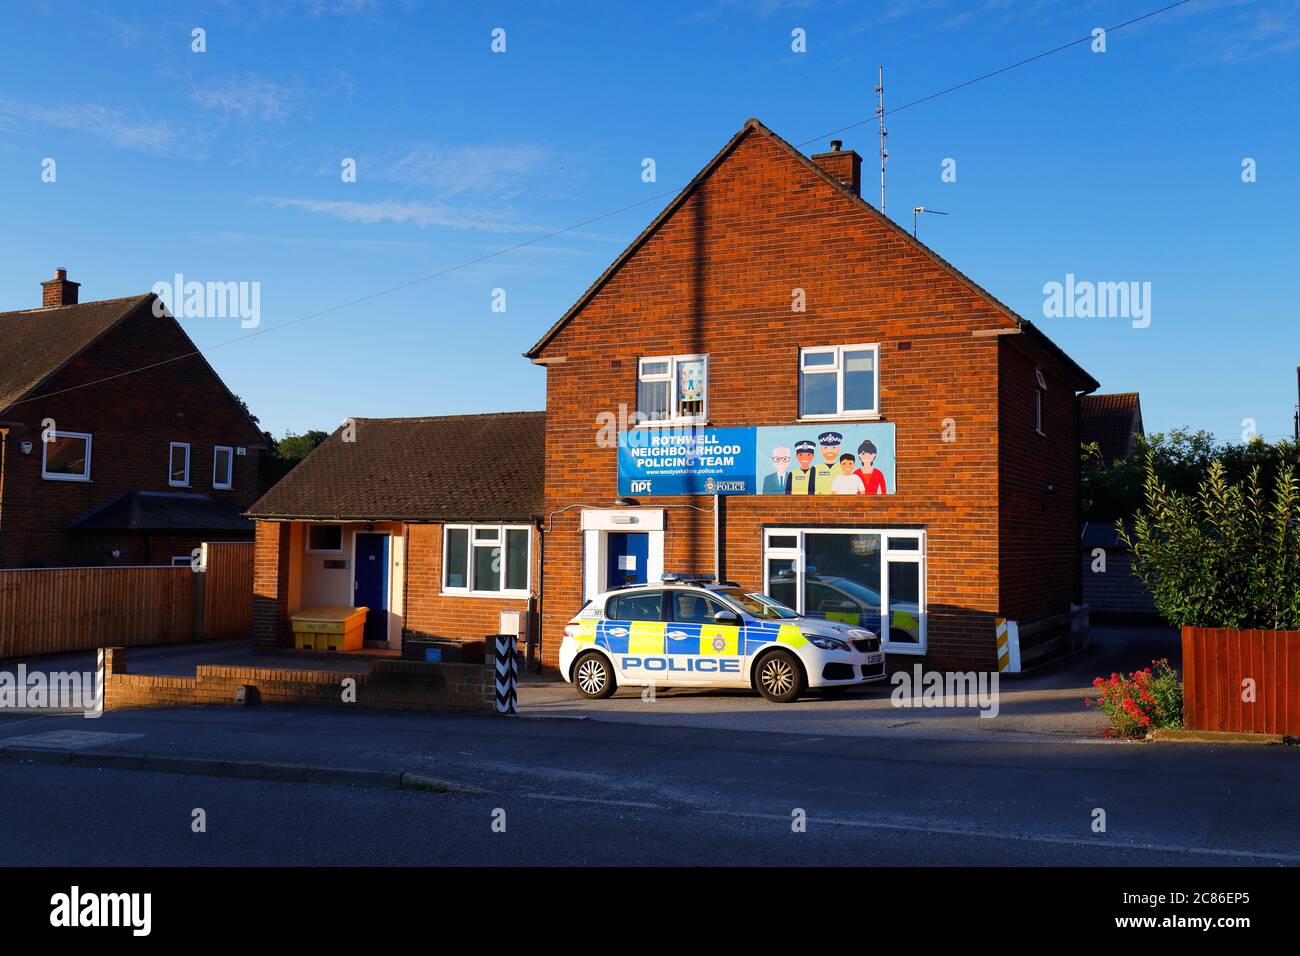 La comisaría de Rothwell en Haigh Road en East Leeds ya no está abierta al público. Foto de stock